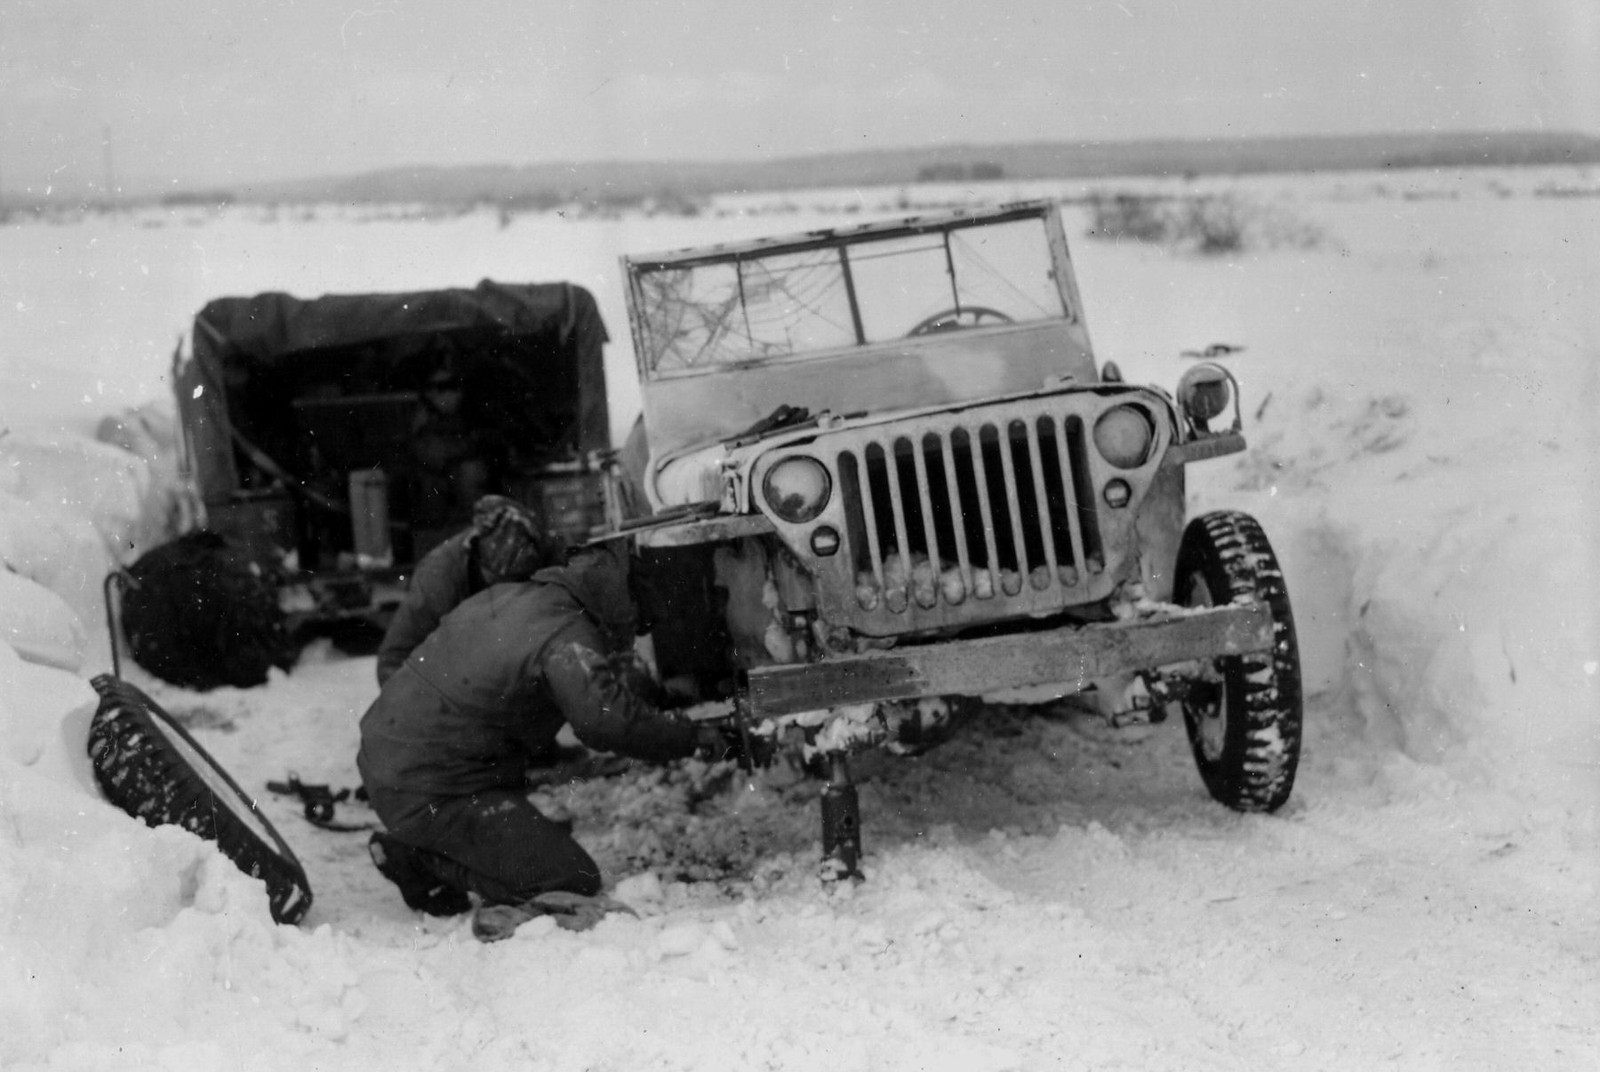 194445 Photos Of Jeeps In Ww2 Ewillys